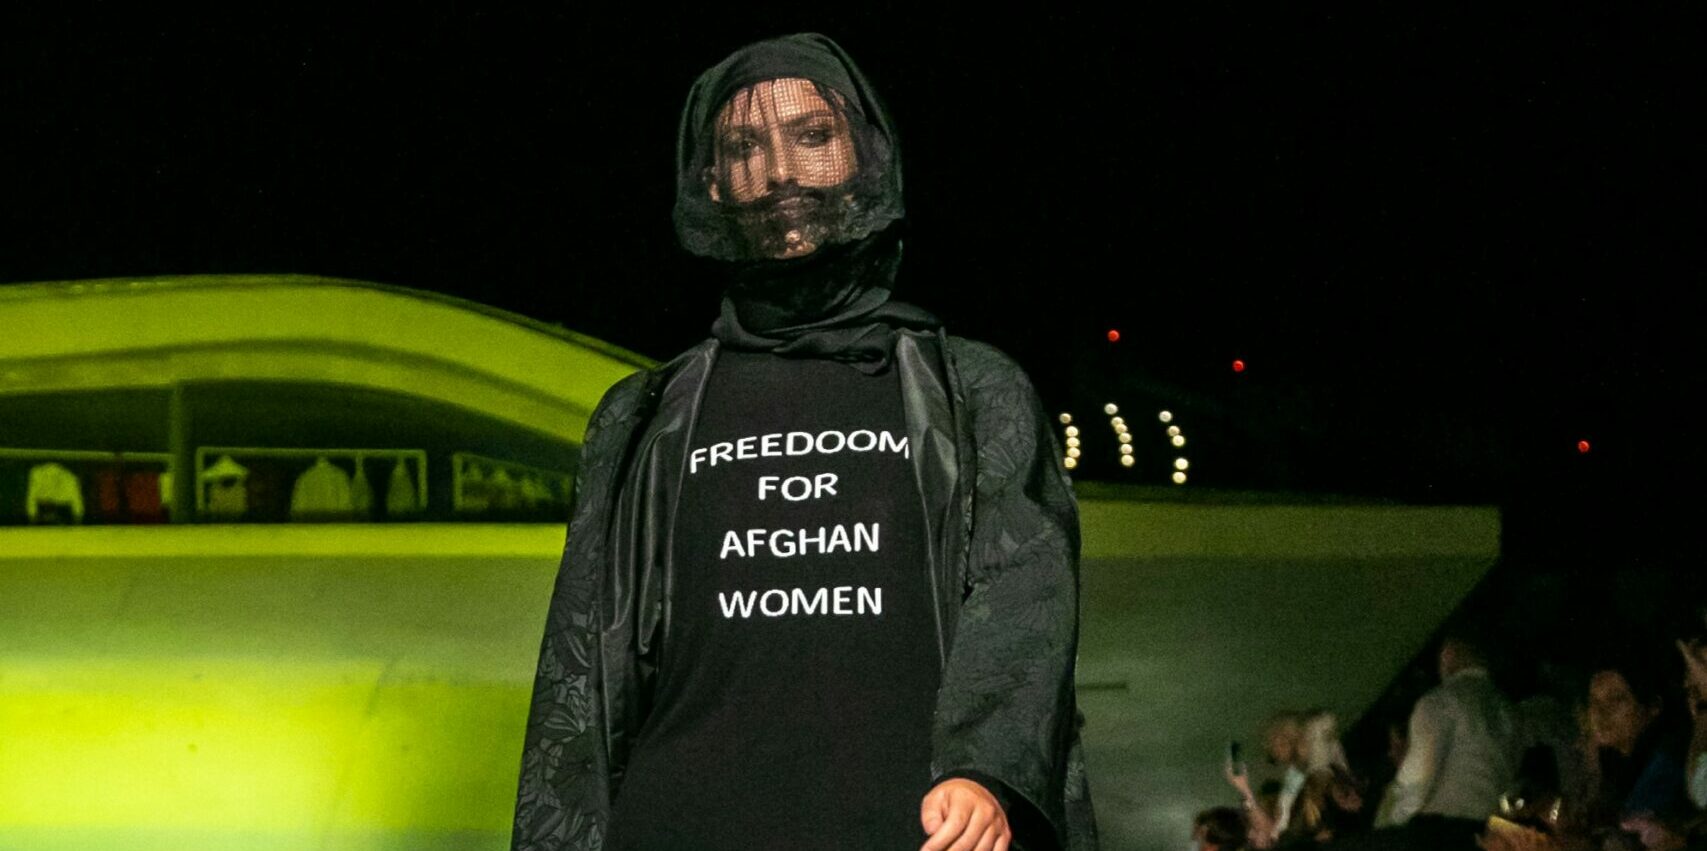 Da Michele Miglionico un pullover-manifesto a sostegno delle donne afghane